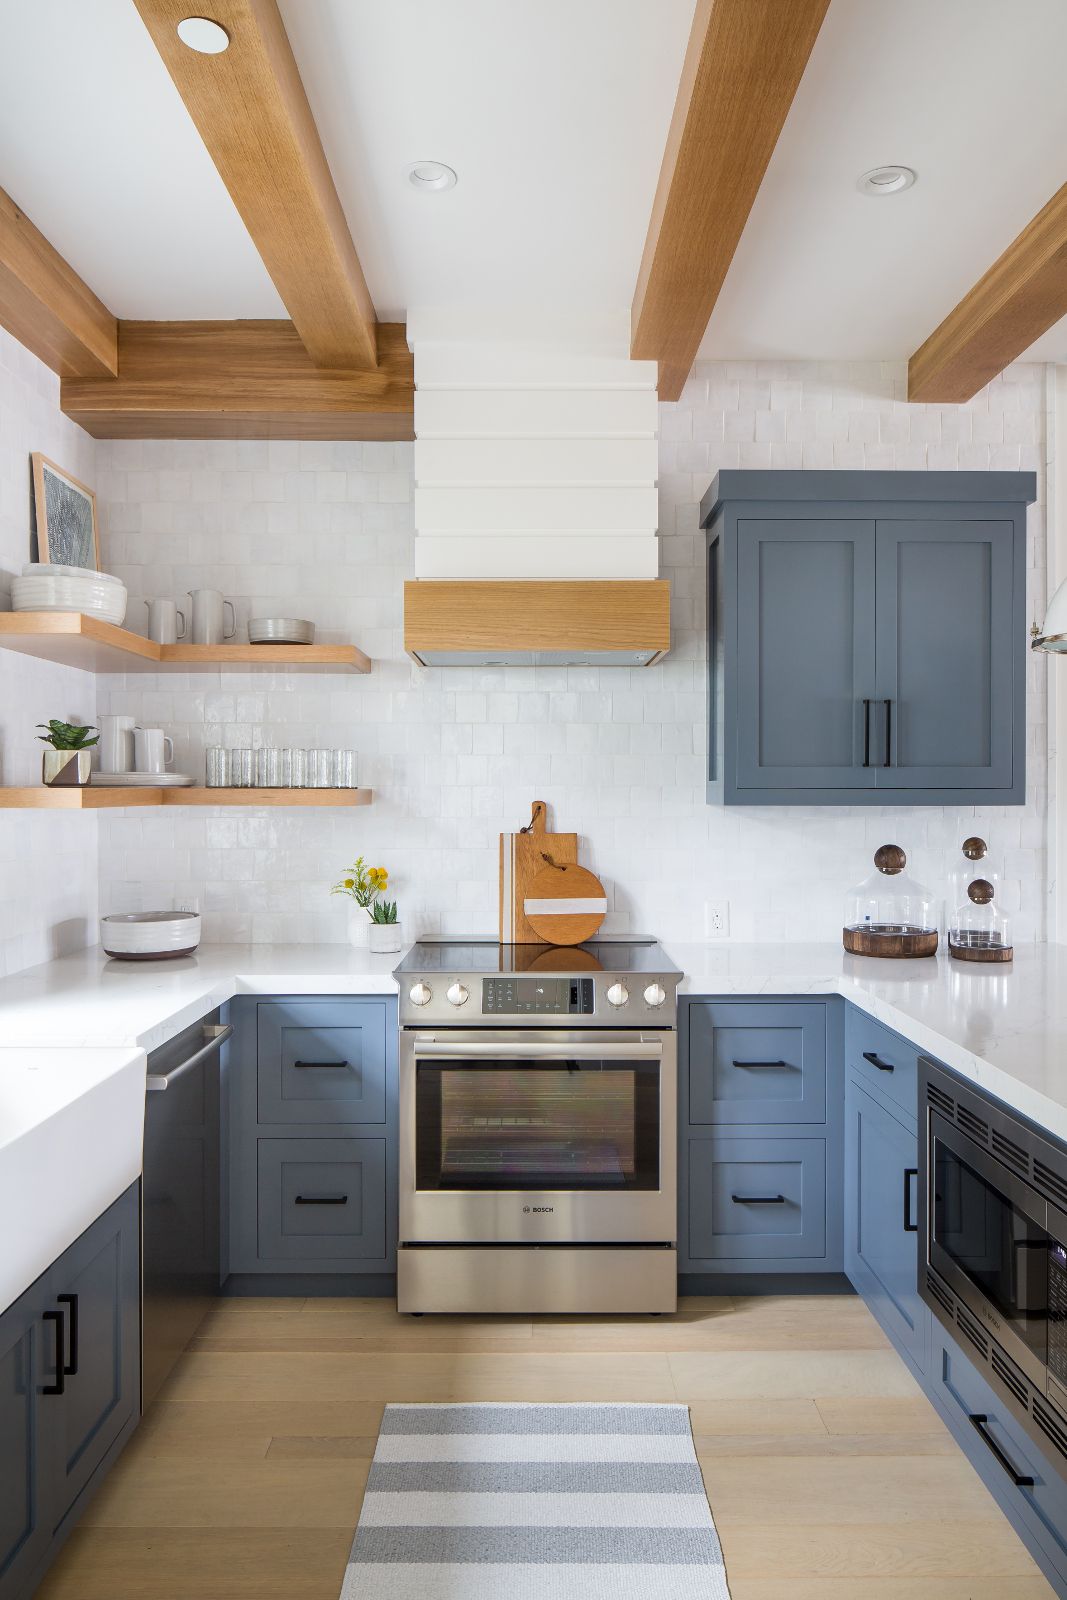 Những ý tưởng thiết kế siêu dễ giúp bạn sở hữu căn bếp đẹp mơ màng ấn tượng - Ảnh 5.